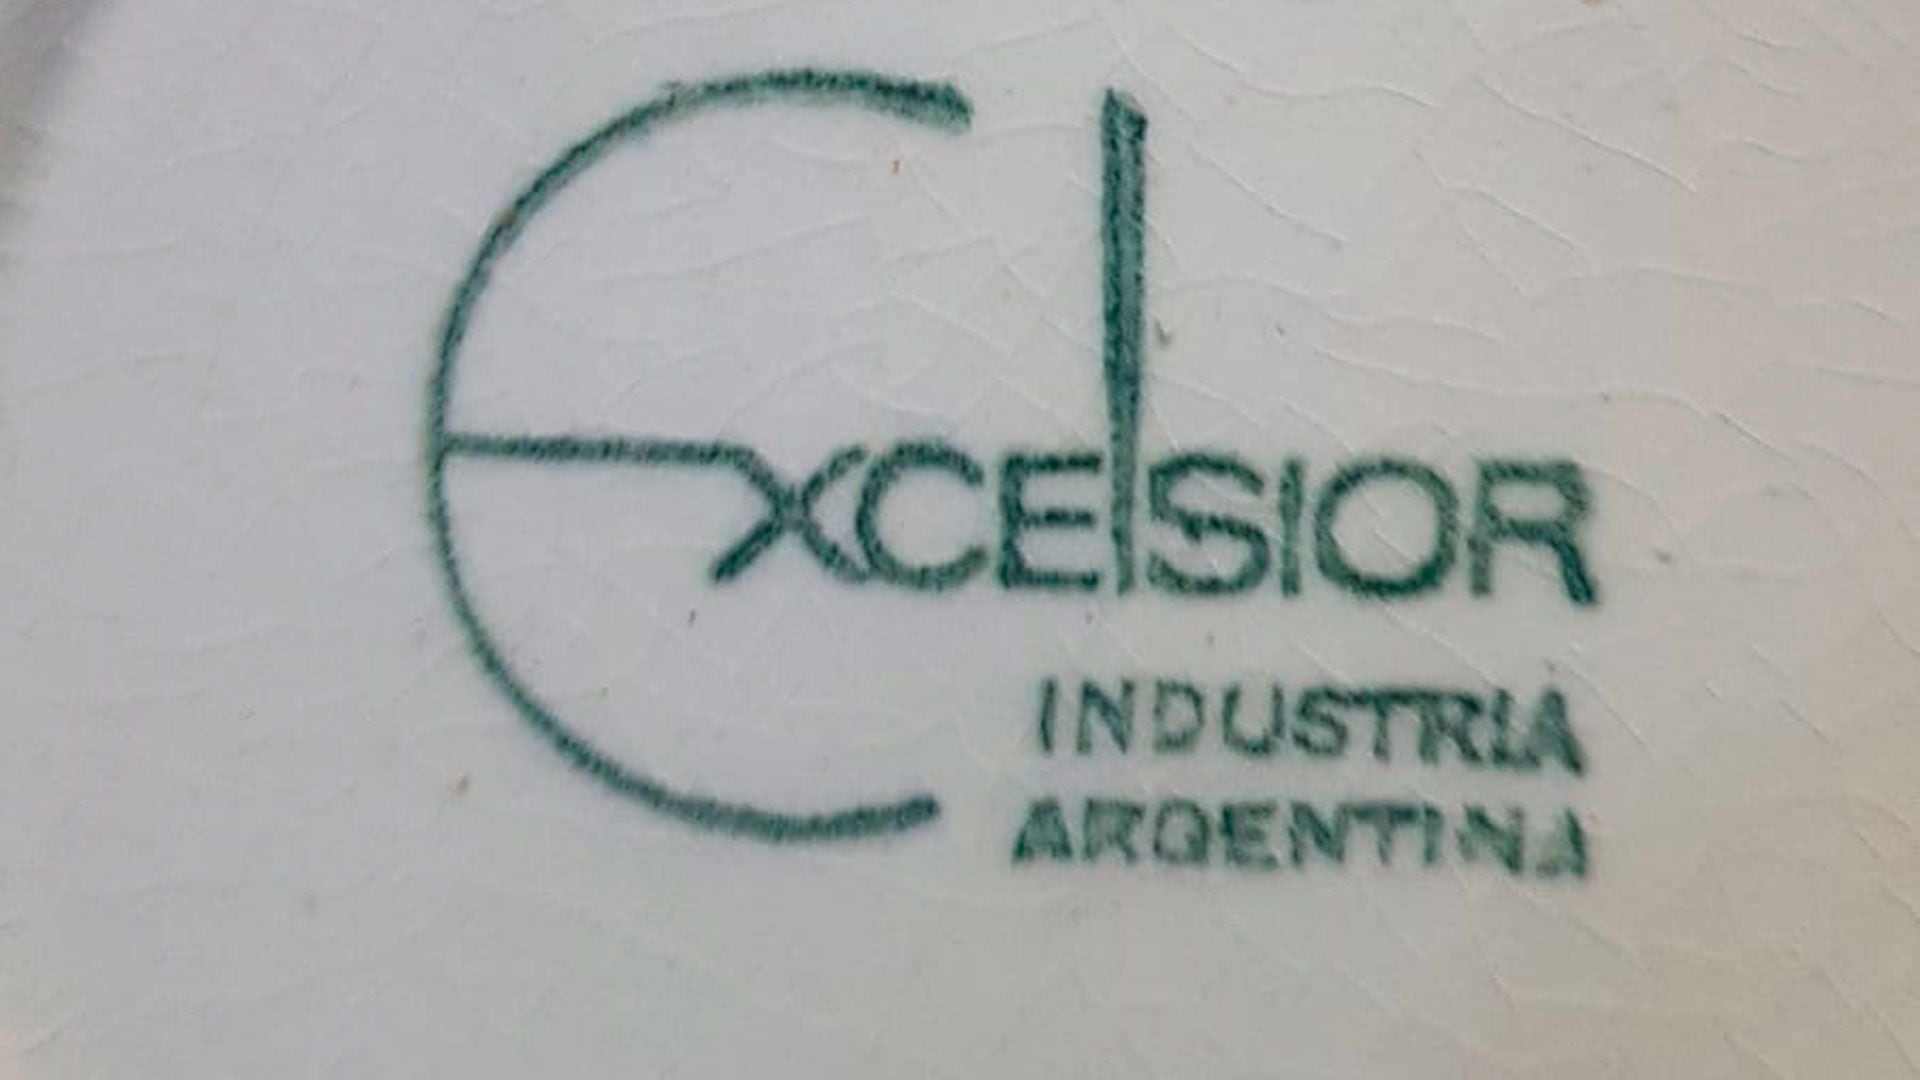 Le juego de té es marca Excelsior y de Industria Argentina